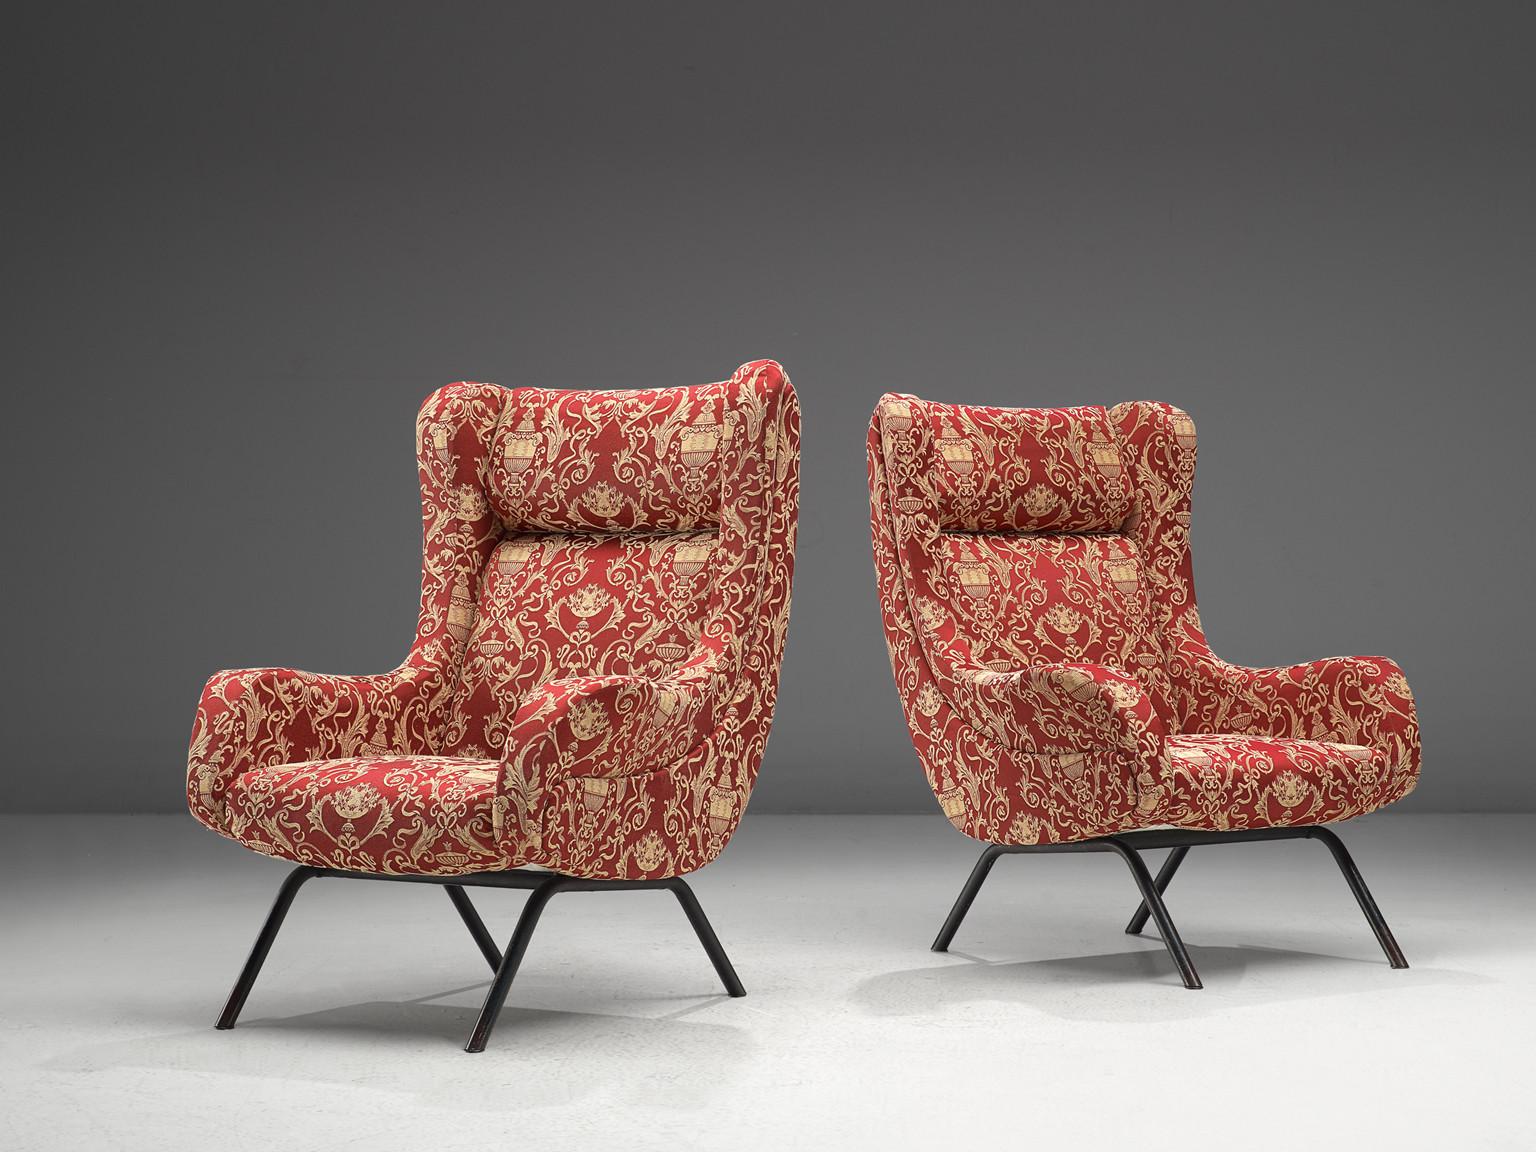 Paire de fauteuils, tissu, acier enduit, Italie, années 60

Ces fauteuils italiens ont une construction épurée avec des lignes élégantes et subtiles. Vu de côté, on peut observer une légère courbe qui forme le dossier et l'accoudoir. Le siège est